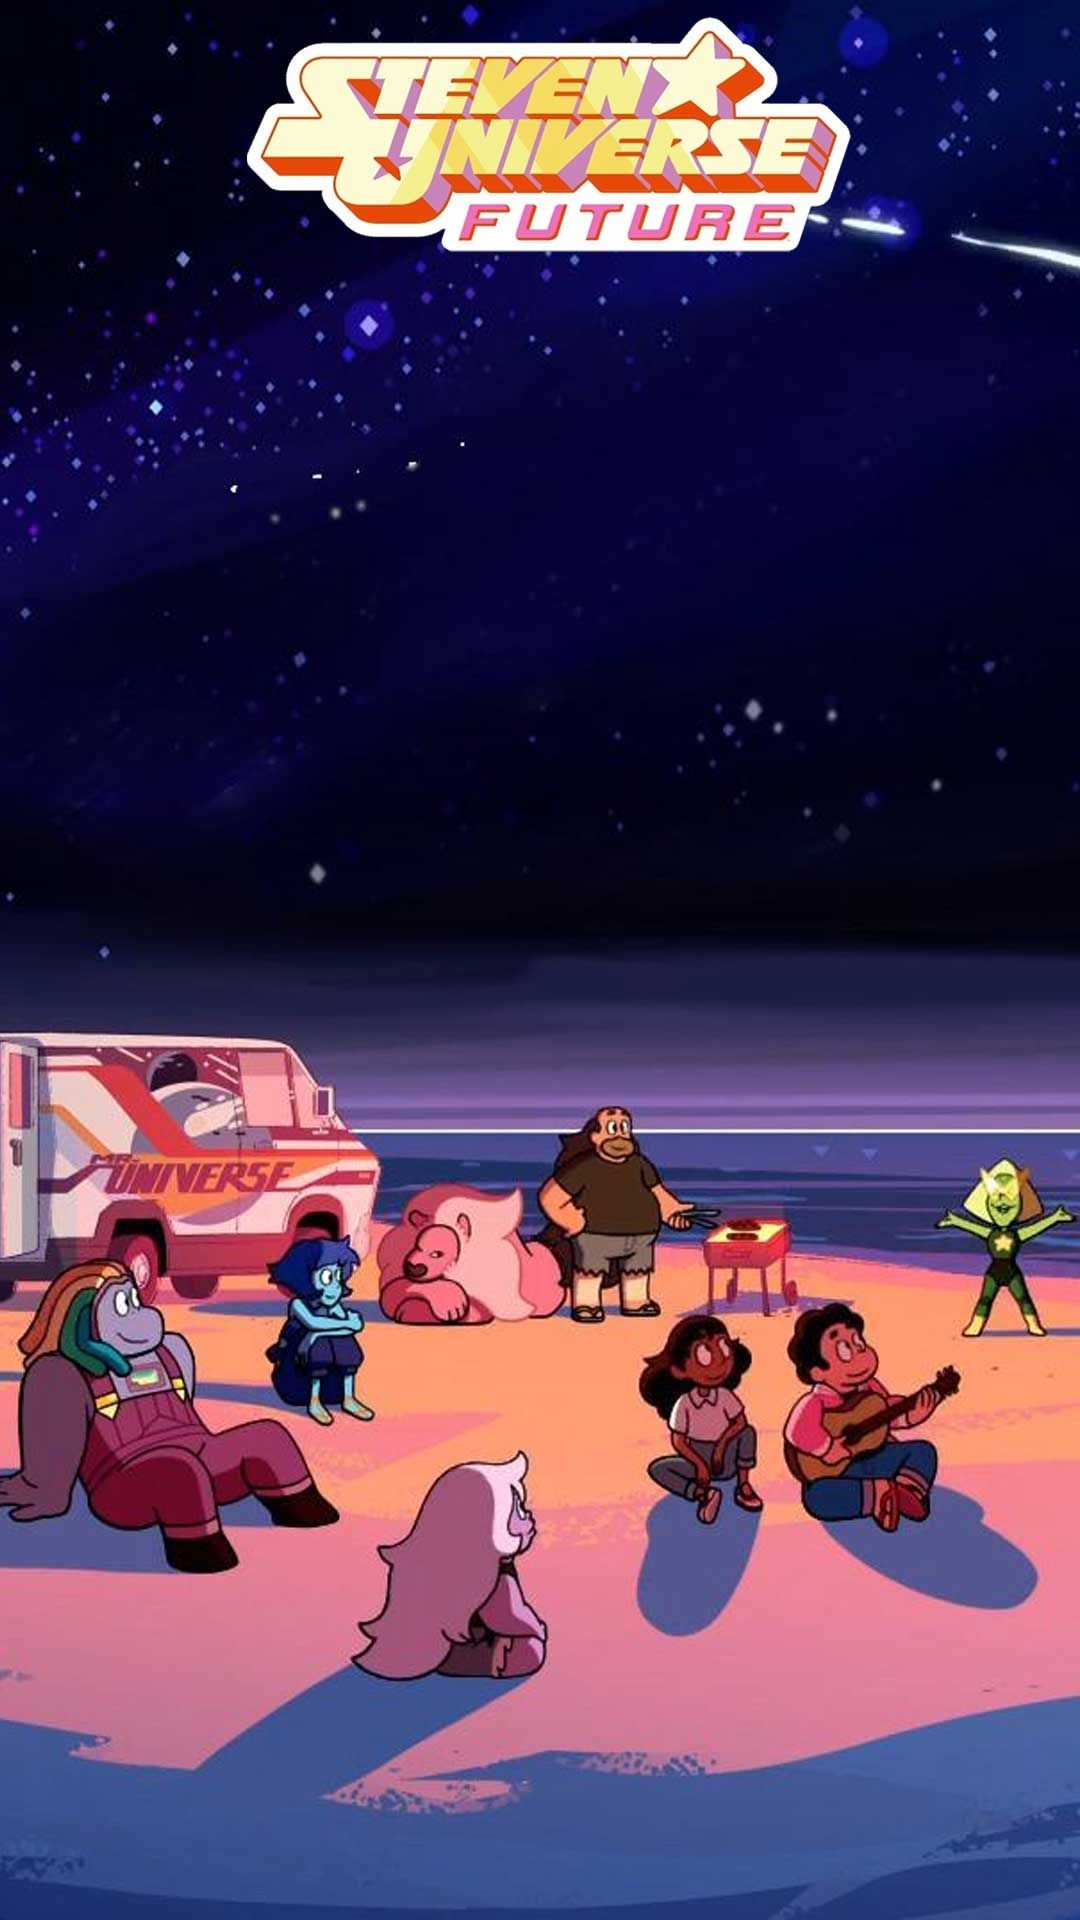 Steven Universe, Future wallpaper, Art screenshots, Steven Universe fanart, 1080x1920 Full HD Phone